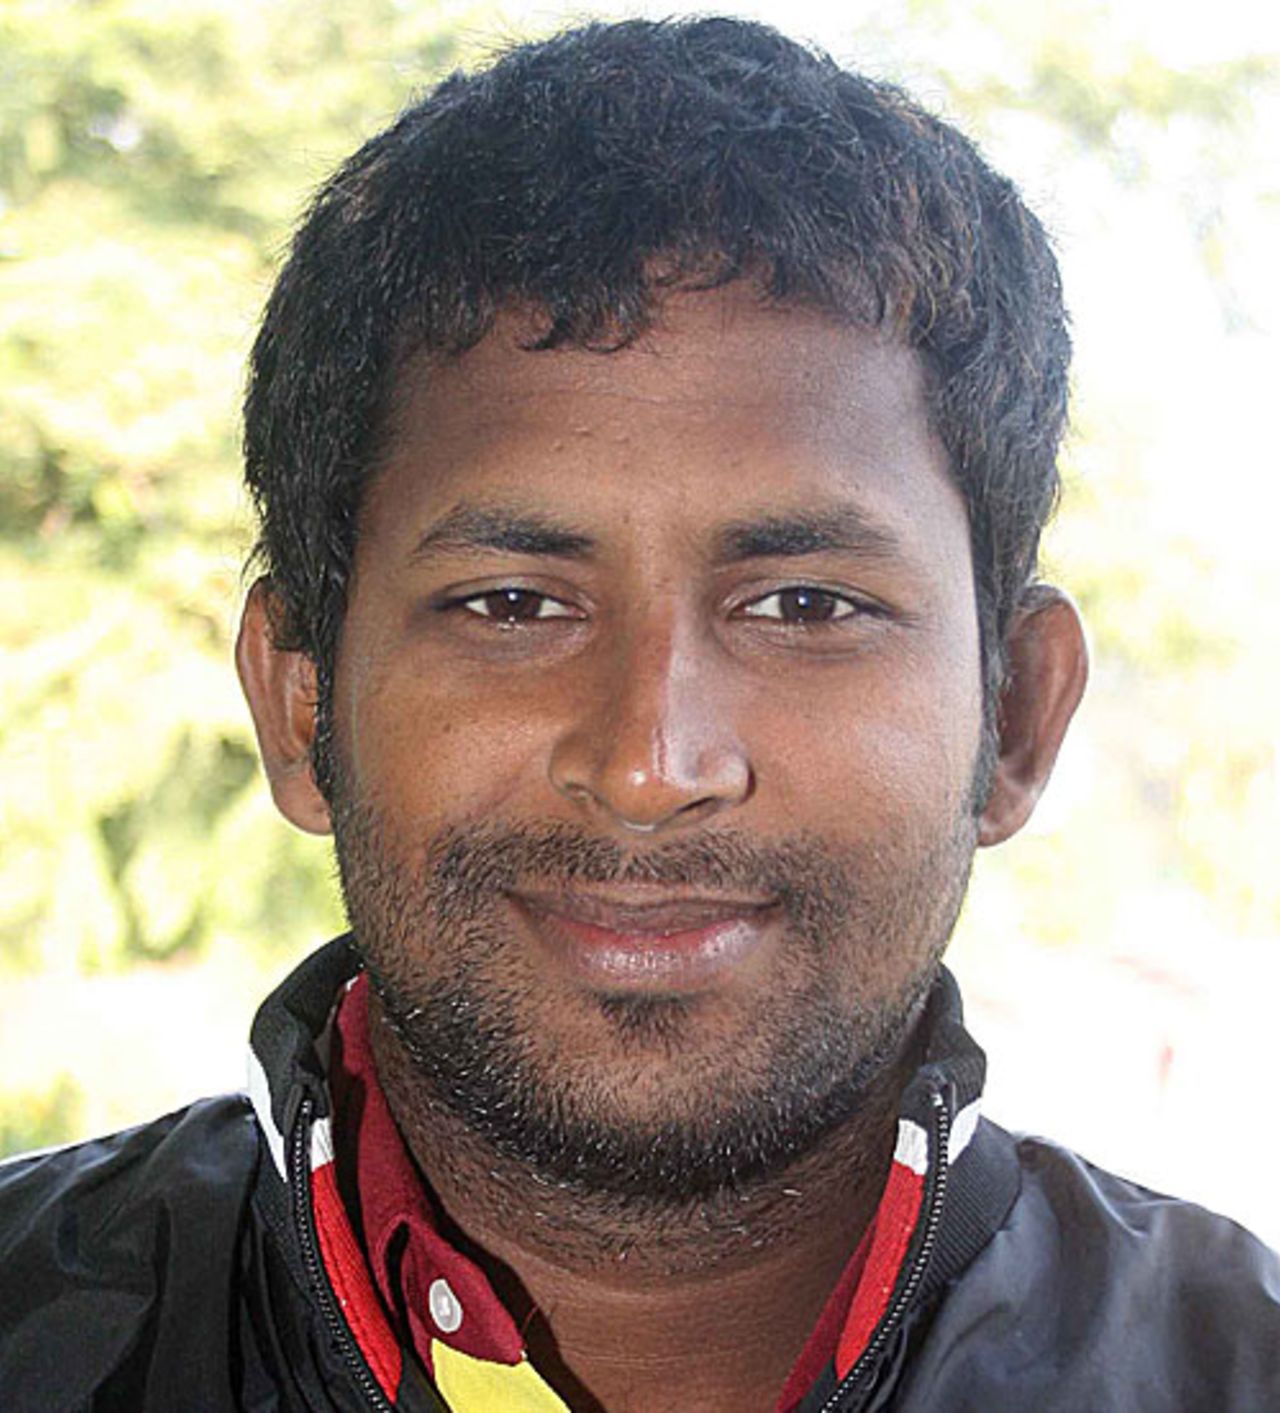 Halhadar Das, player portrait, December 2009